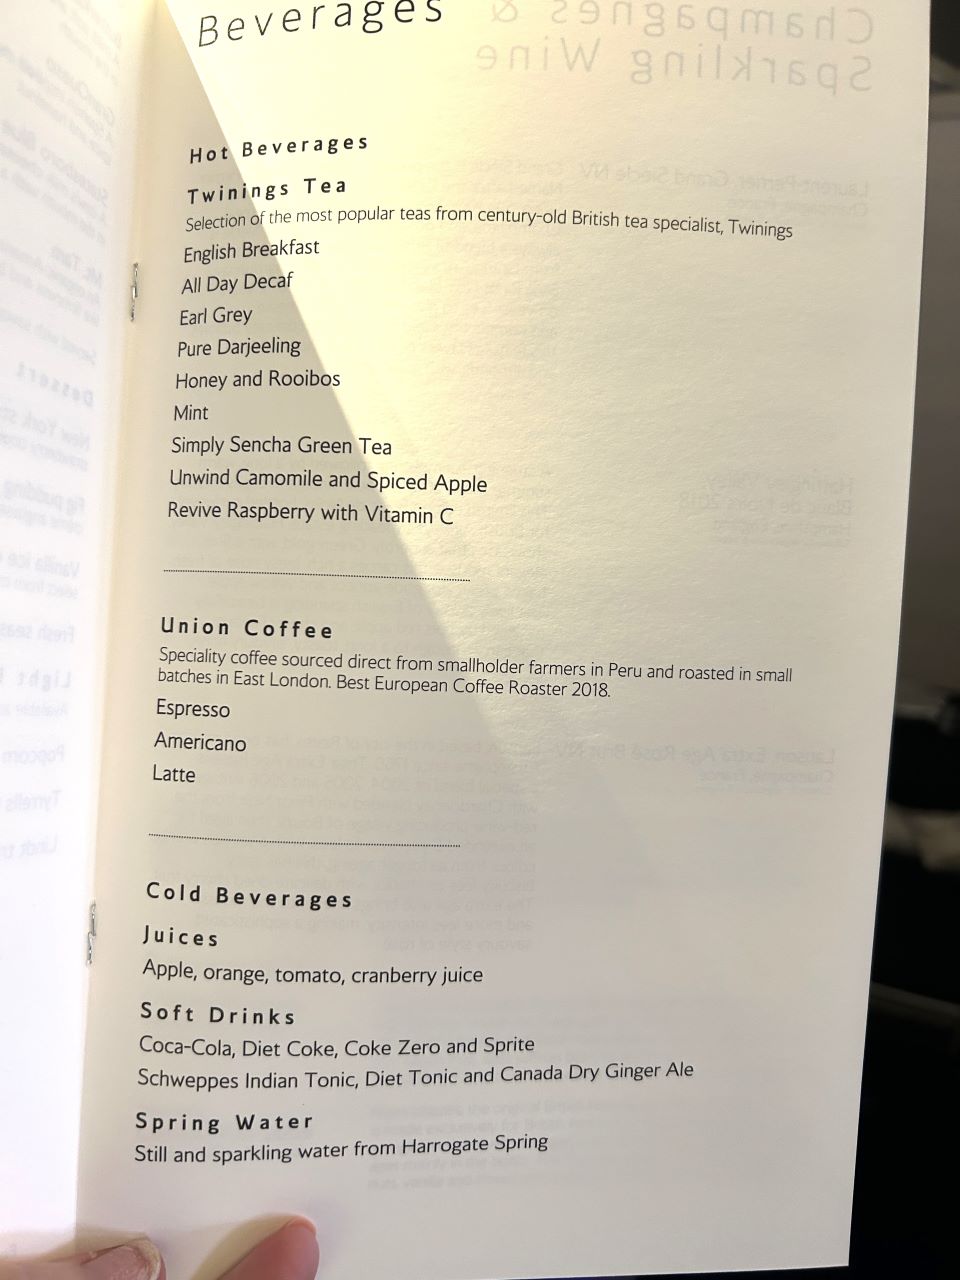 British Airways First Class Beverage Menu